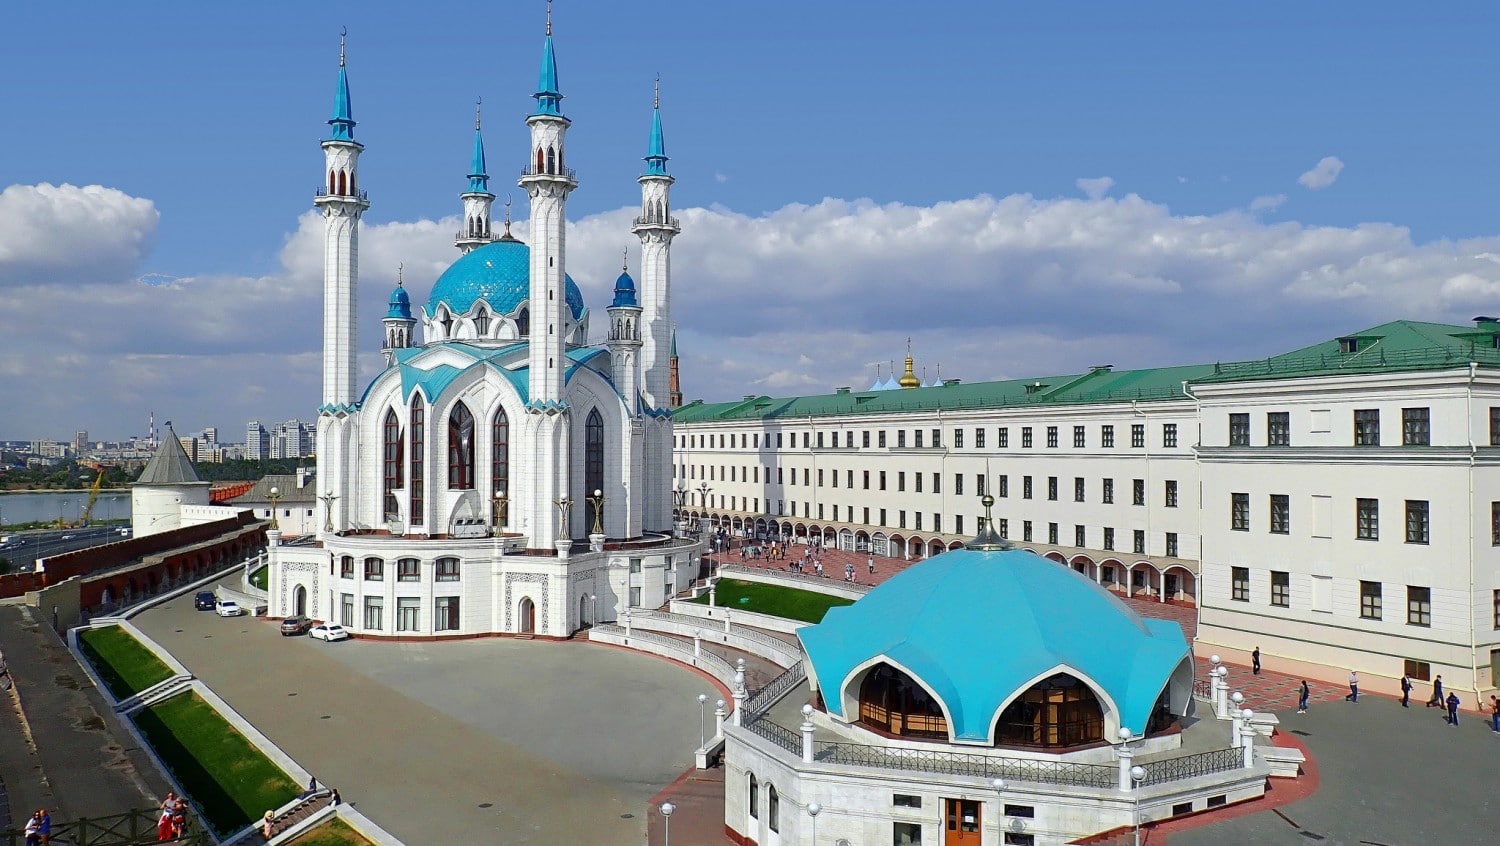 Travel to Kazan